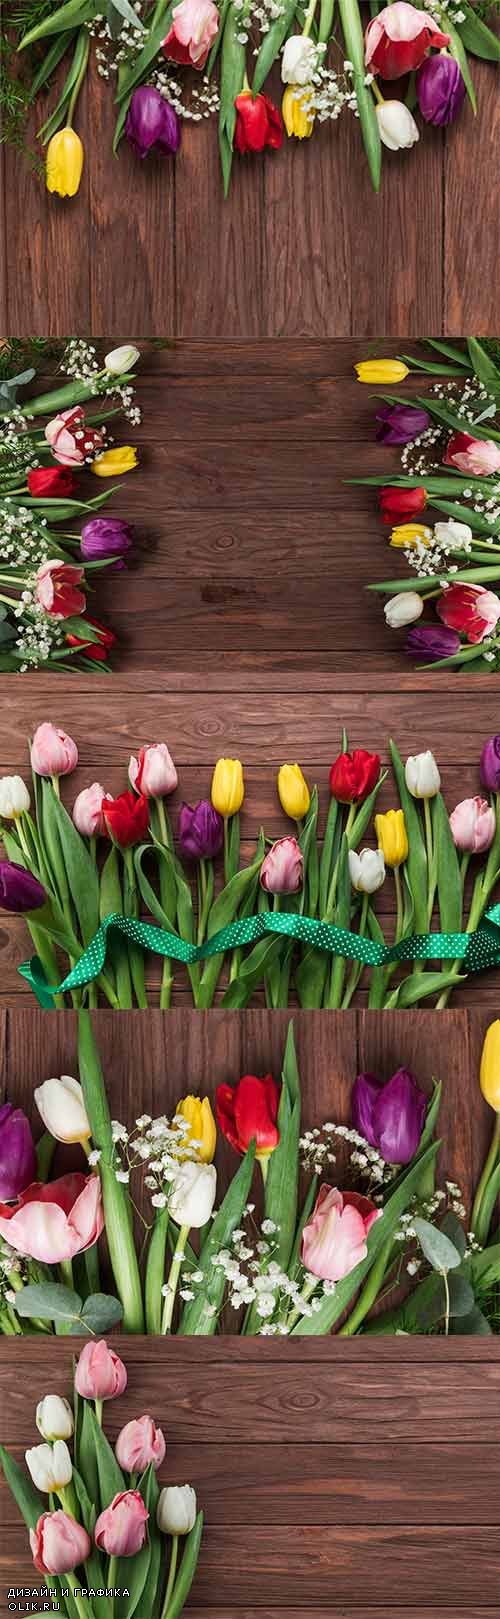 Фоны с красивыми тюльпанами - Растровый клипарт / Backgrounds with beautiful tulips - Raster clipart